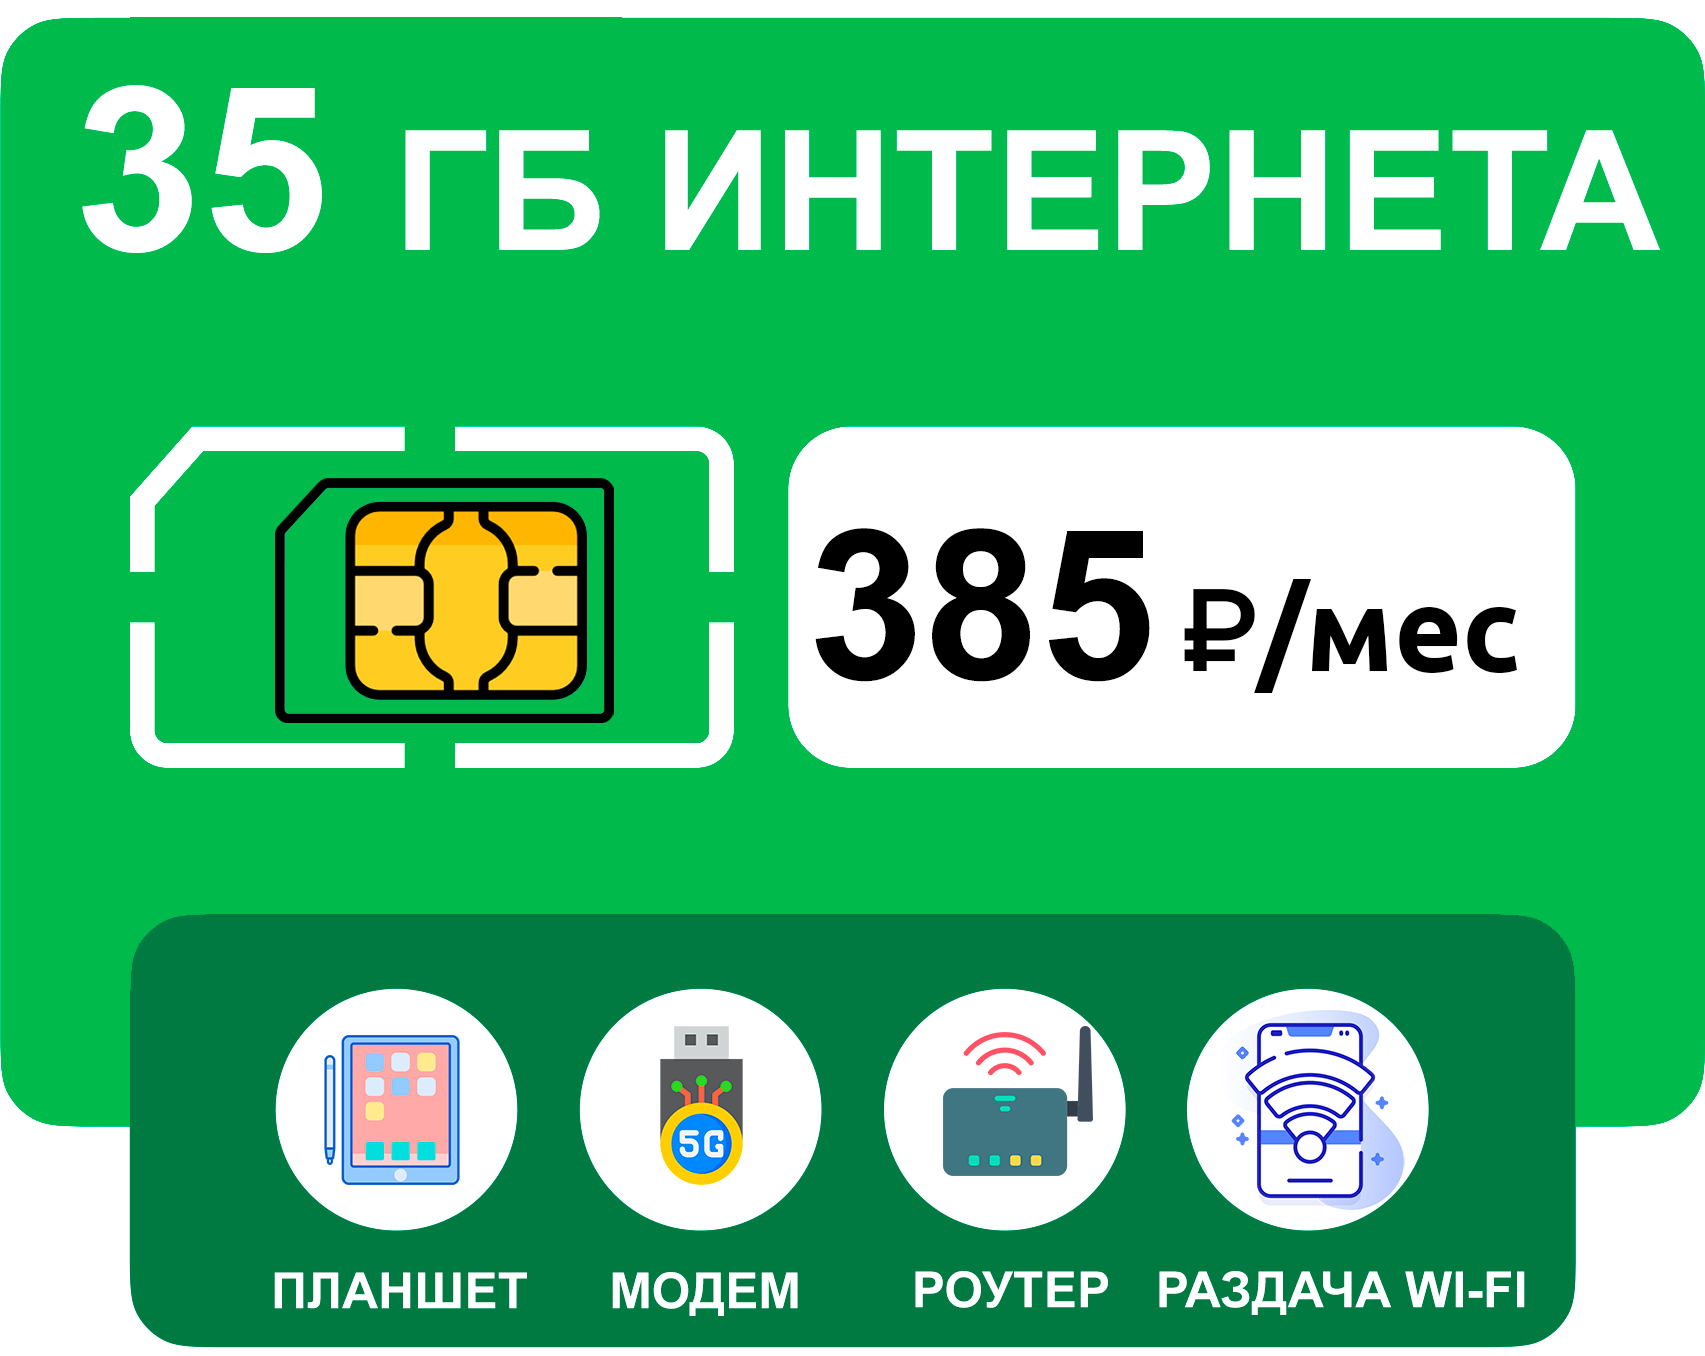 SIM-карта 35 гб интернета 3G/4G за 385 руб/мес (модемы, роутеры, планшеты) + раздача, торренты (вся Россия)